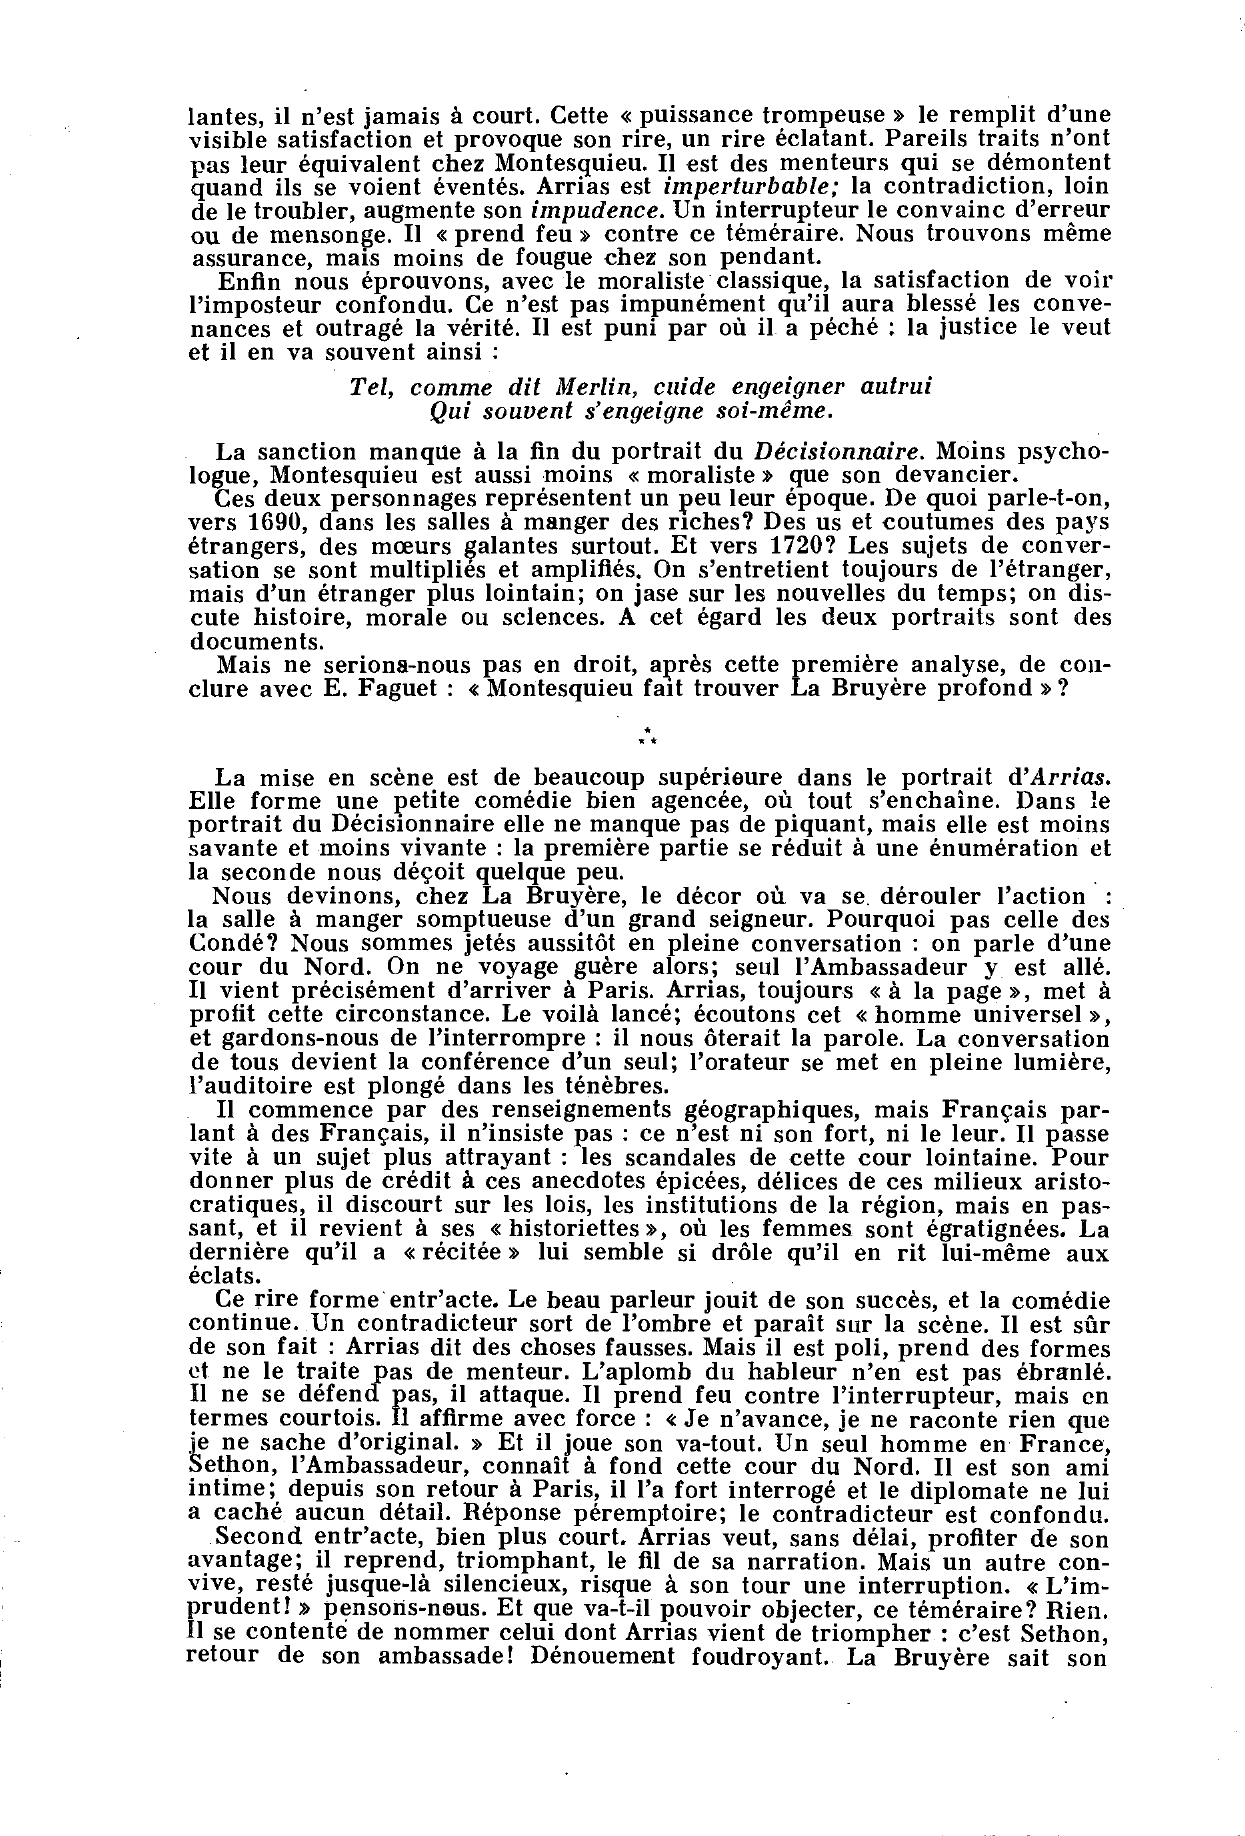 Prévisualisation du document « Arrias », de La Bruyère et le « Décisionnaire », de Montesquieu.